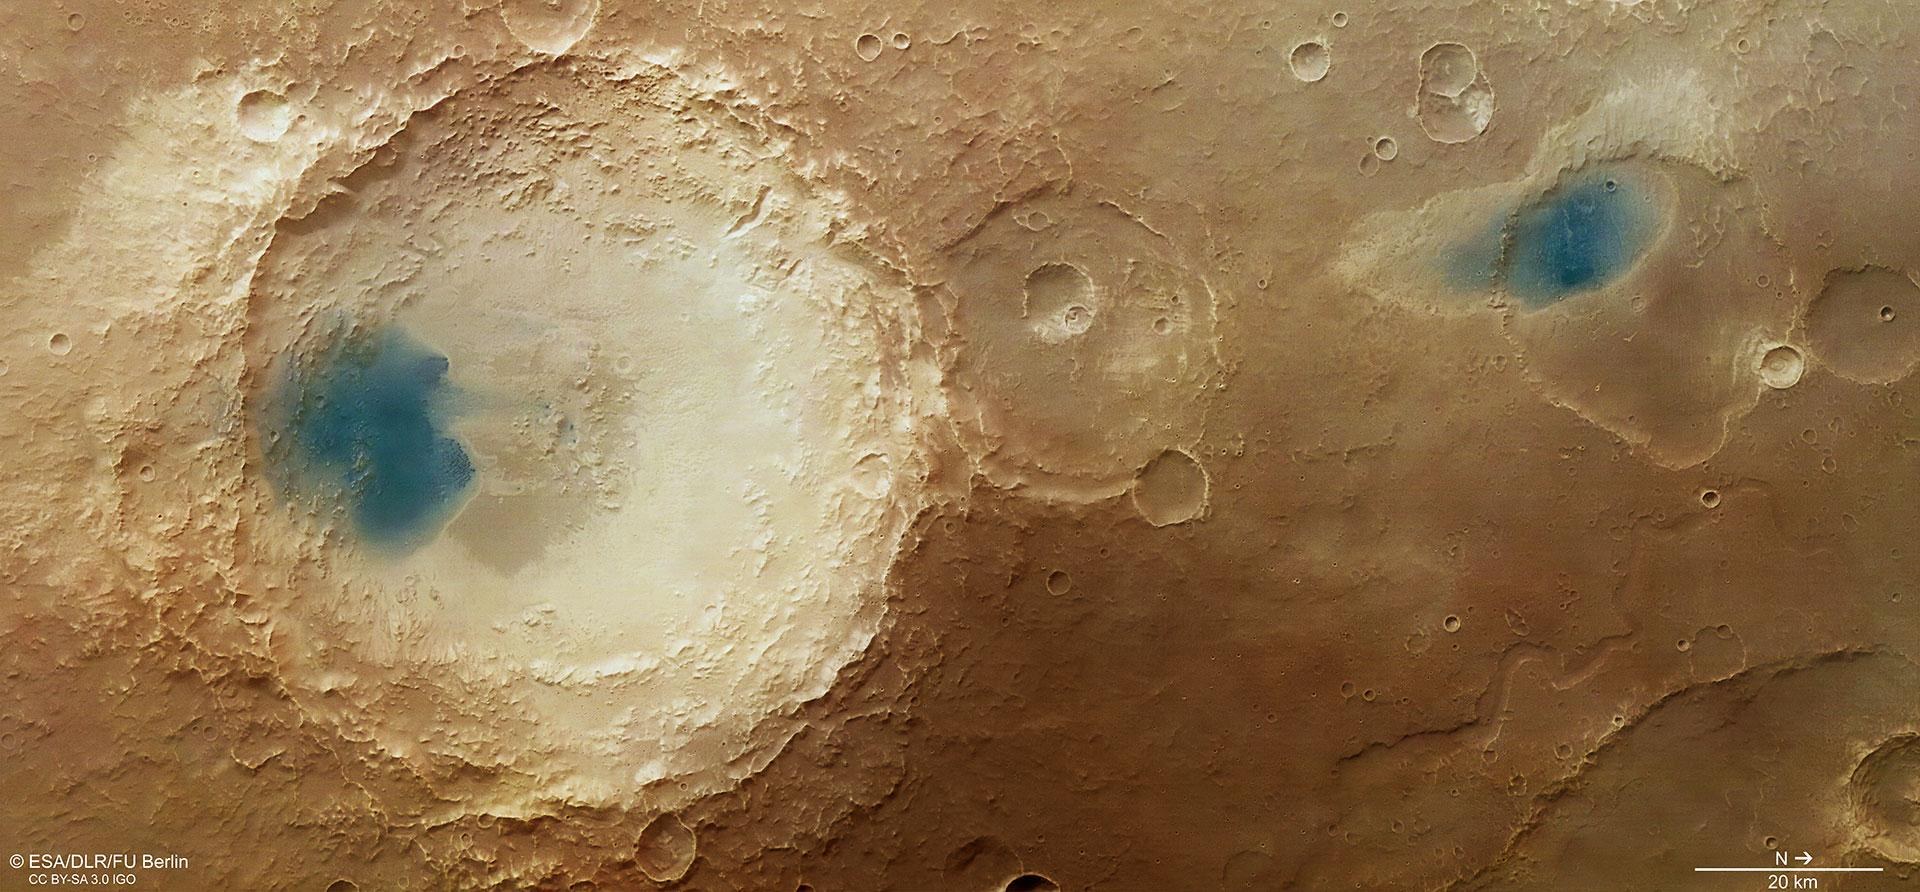 Krater-Generationen in Arabia Terra